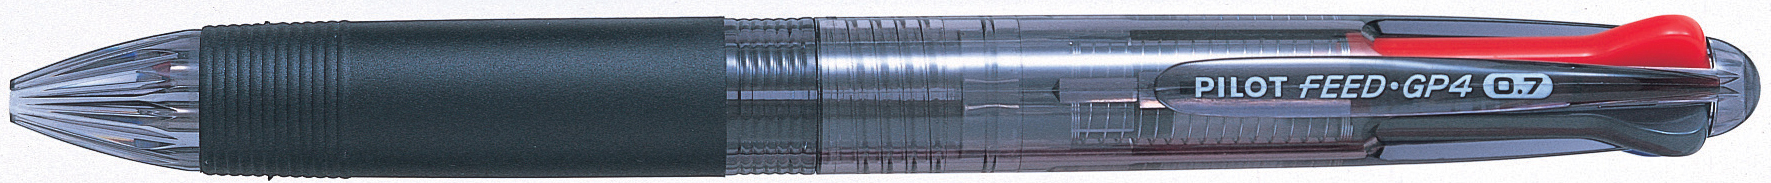 PILOT Kugelschreiber Feed GP4 1.0mm BPKG35RMB schwarz